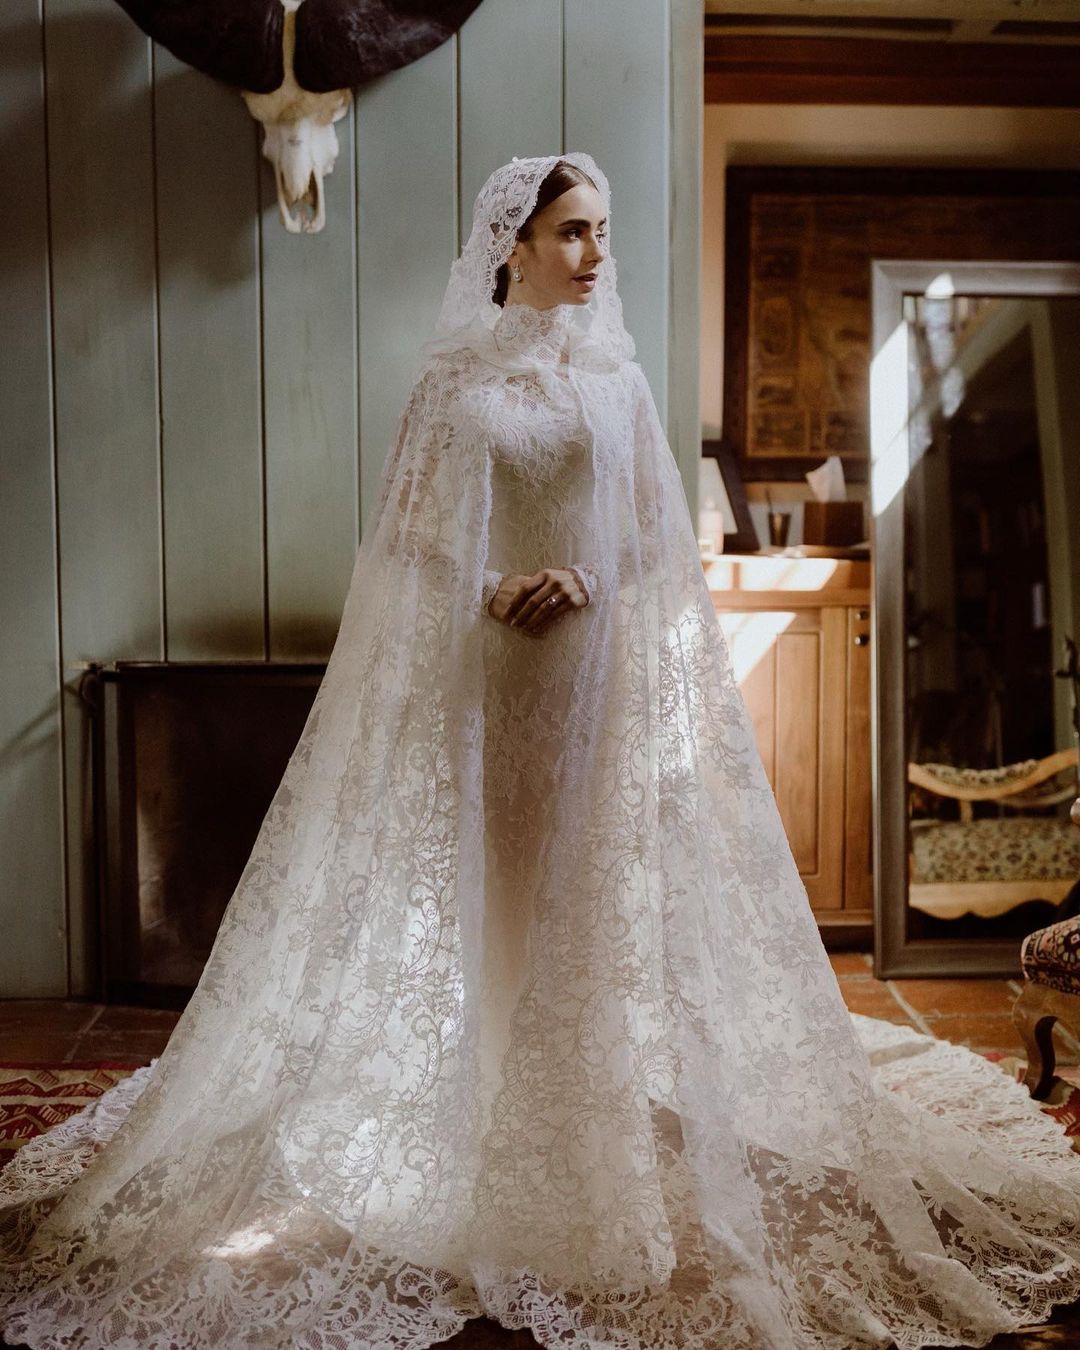 Lily Collins muestra su impresionante vestido de novia con velo